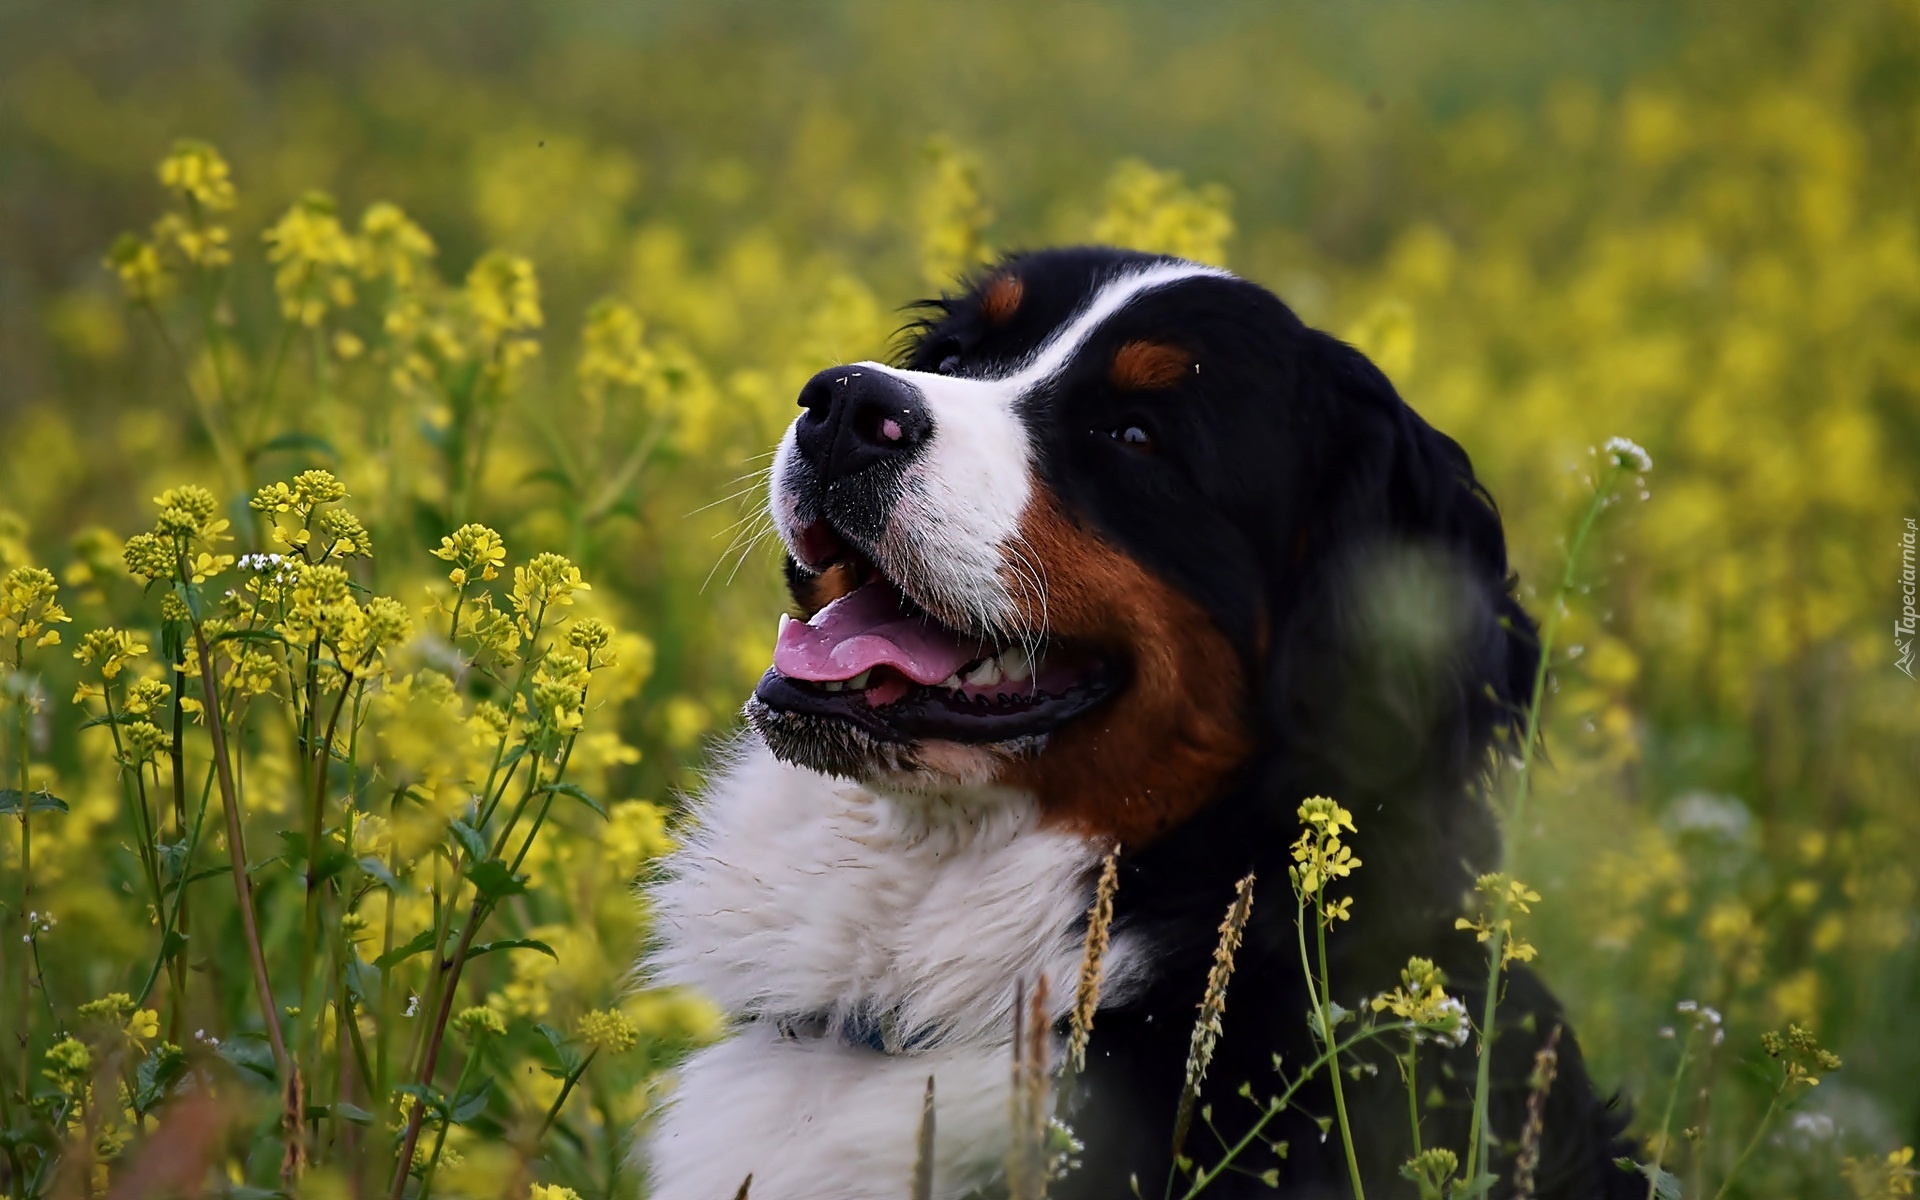 Pies, Żółte, Kwiaty, Rzepak